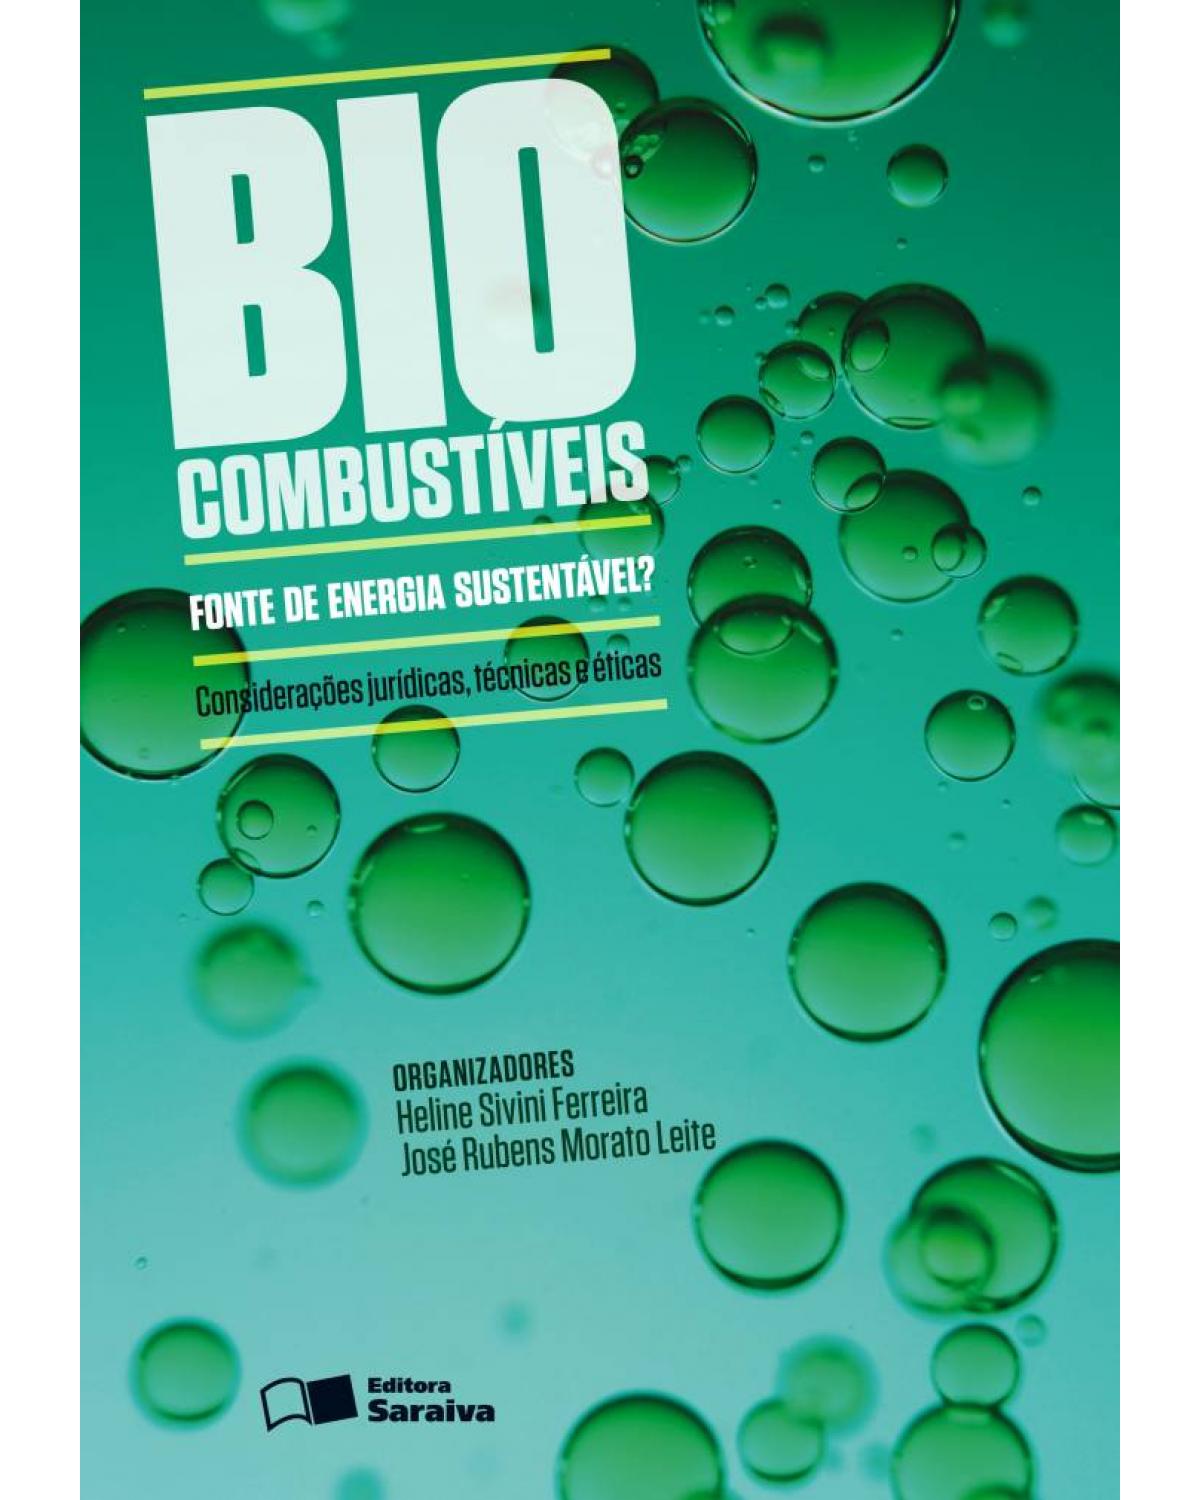 Biocombustíveis: fonte de energia sustentável? - considerações jurídicas, técnicas e éticas - 1ª Edição | 2013